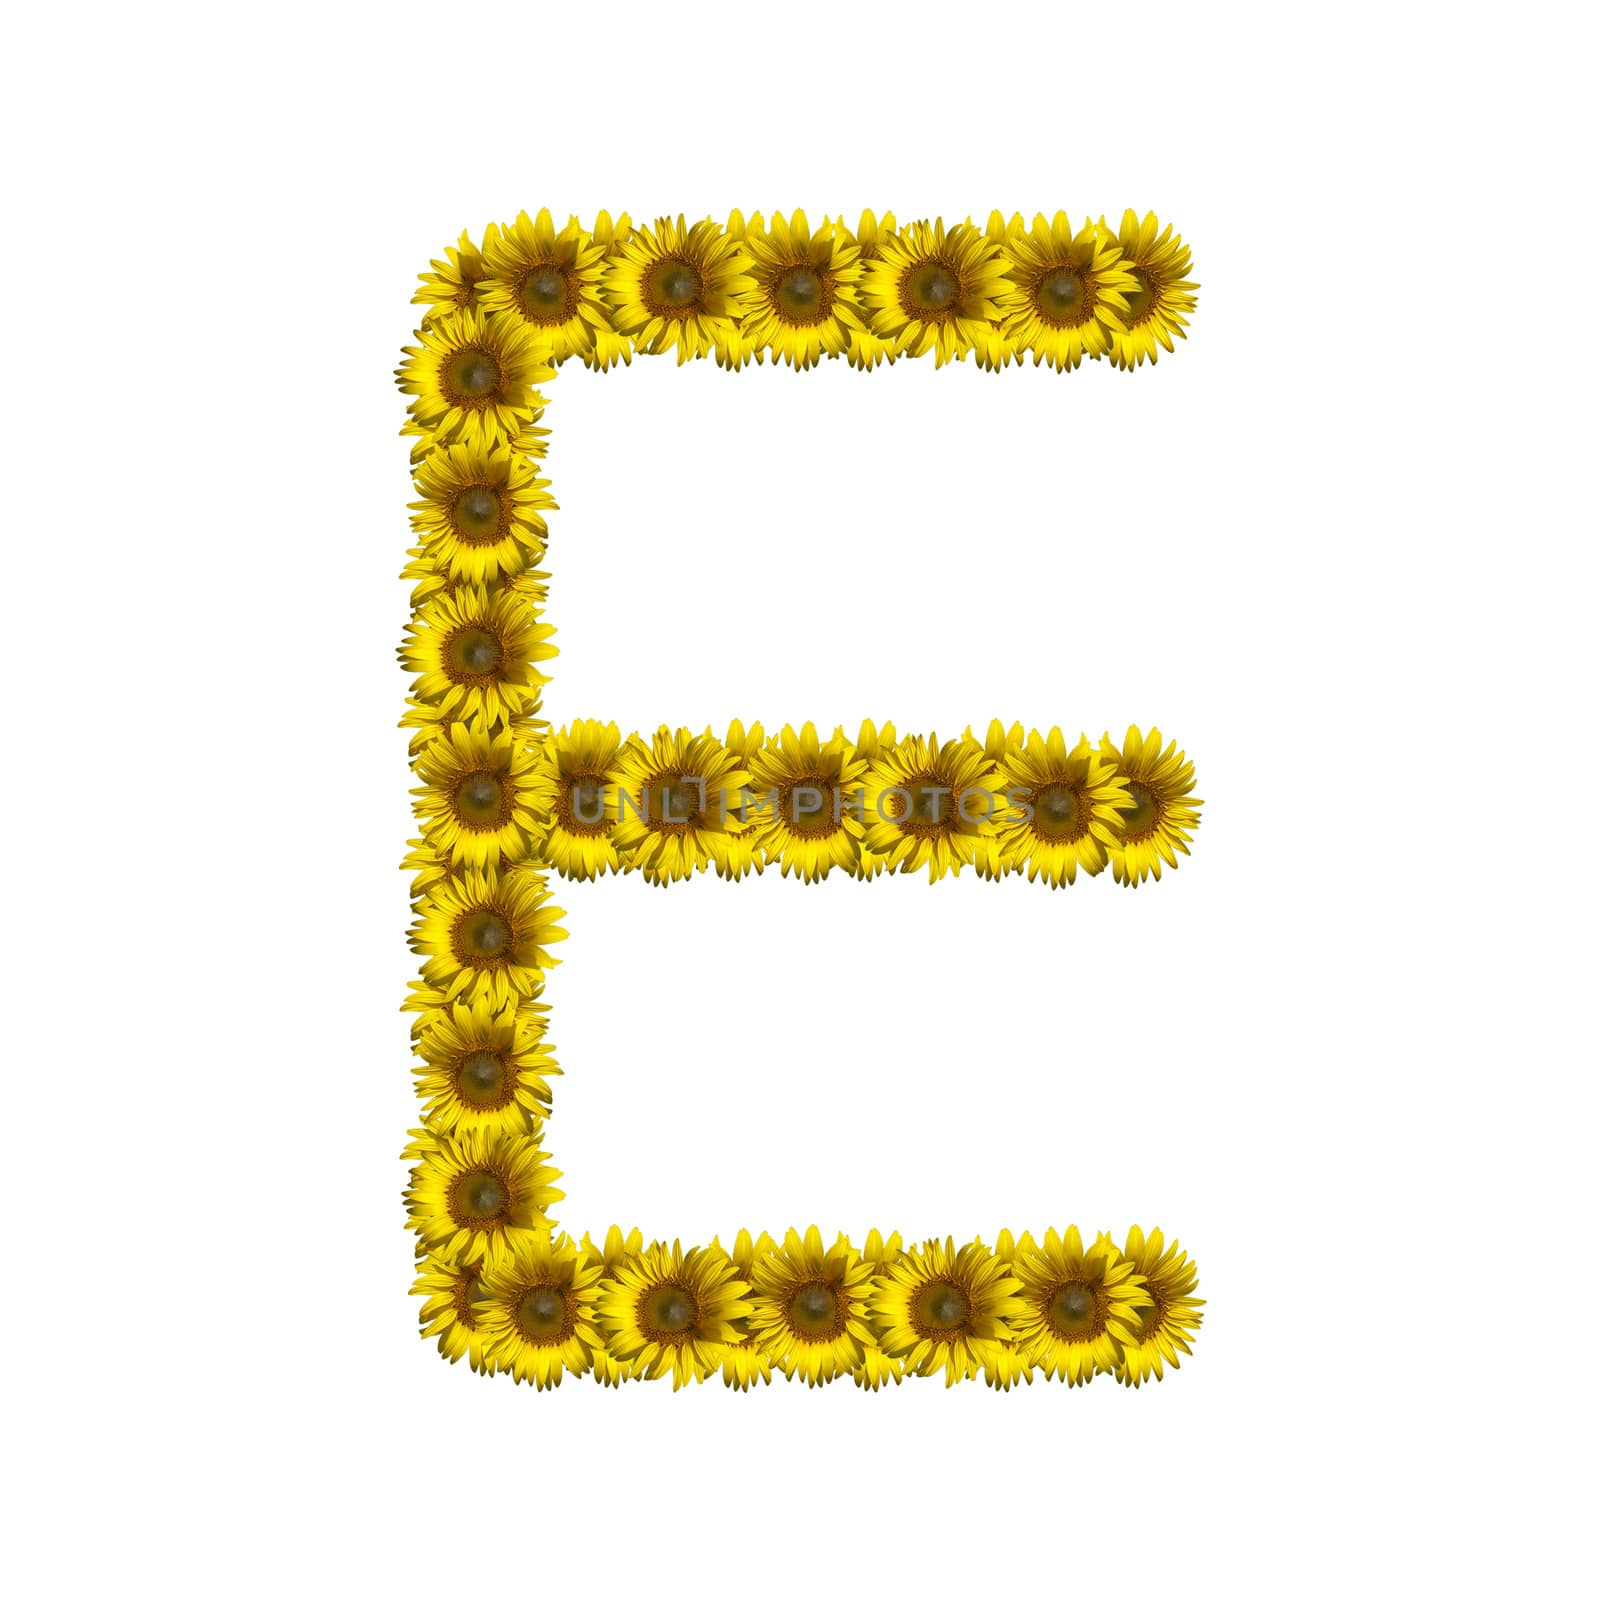 Isolated sunflower alphabet E by Exsodus